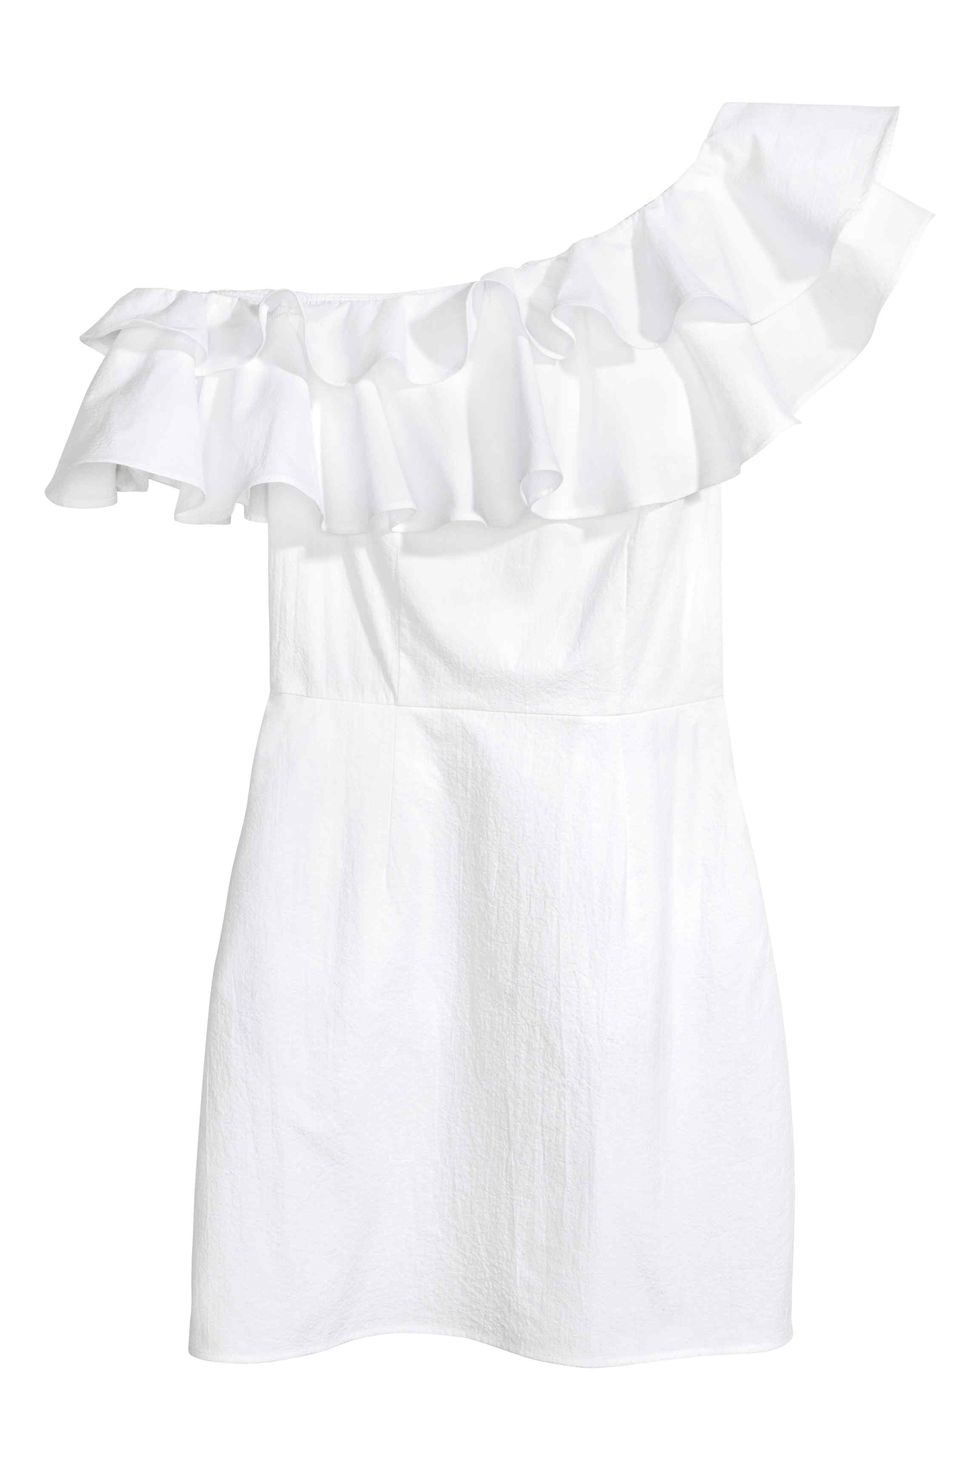 White, Clothing, Product, Sleeve, Dress, Ruffle, Blouse, Day dress, 